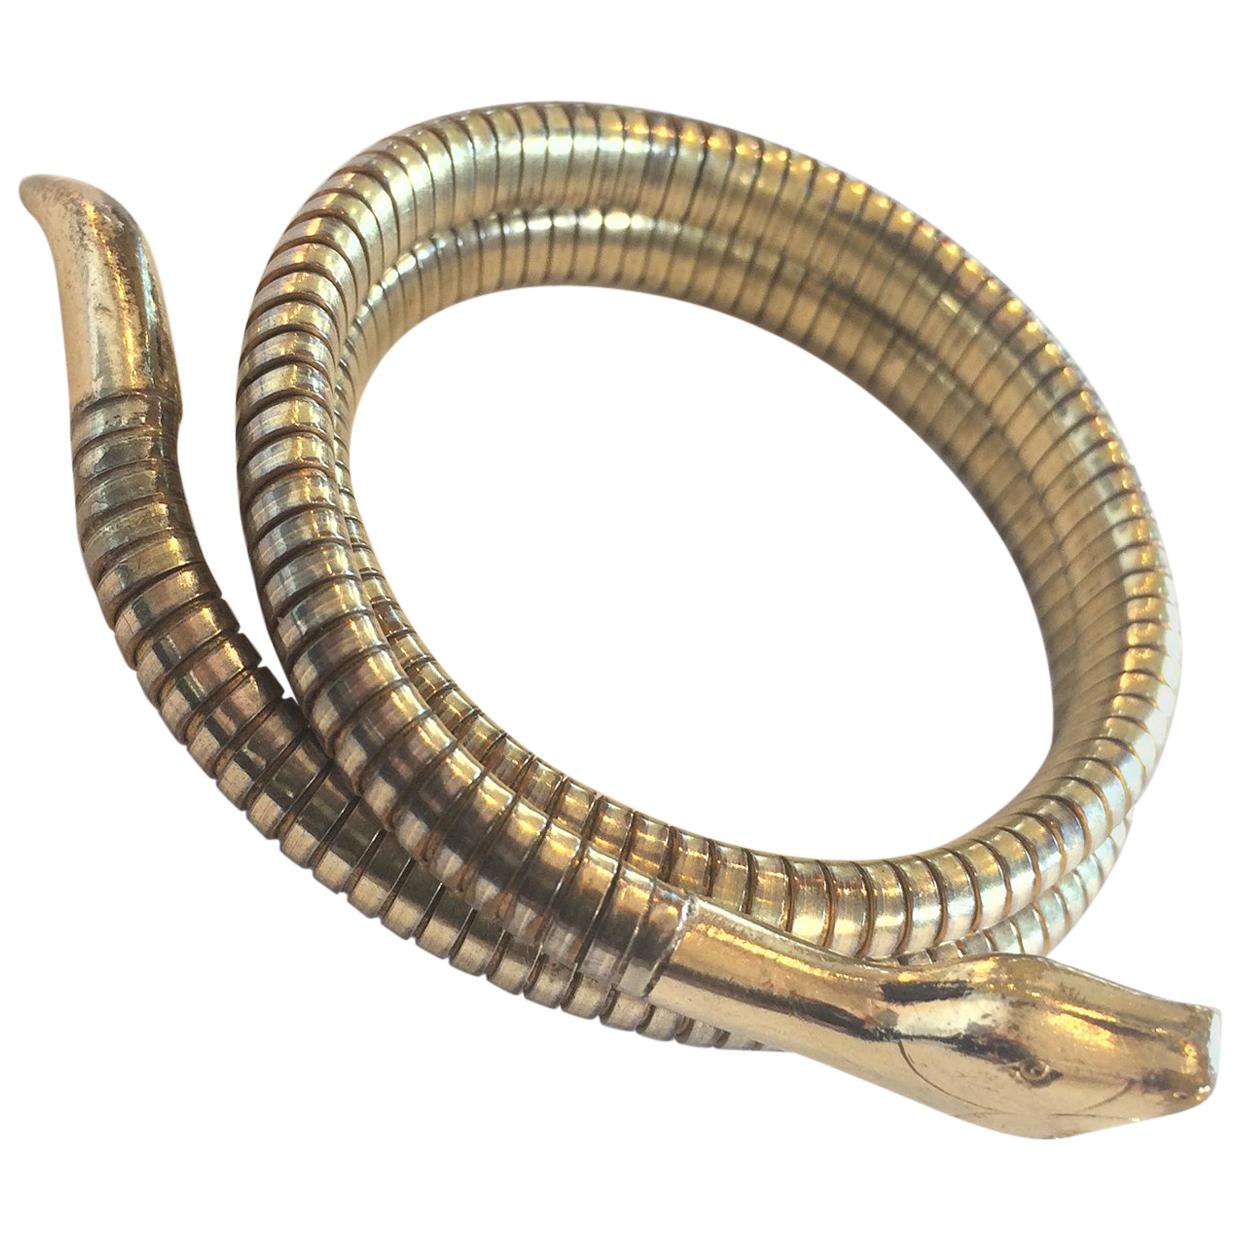 Art Deco 9ct gold snake serpent bangle bracelet